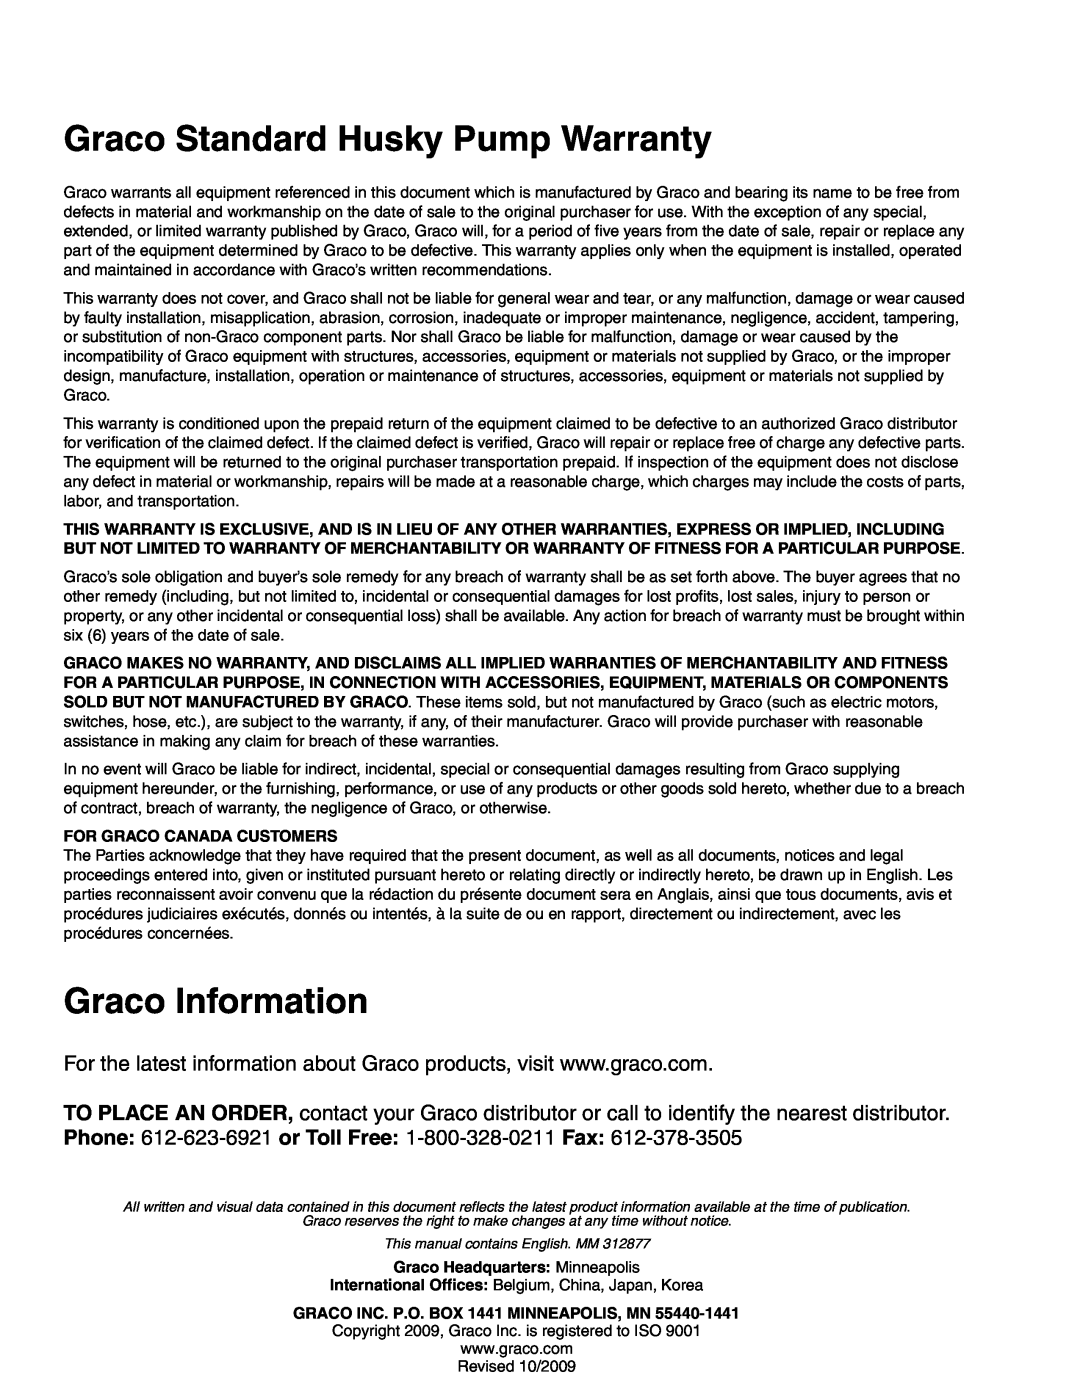 Graco 312877C Graco Standard Husky Pump Warranty, Graco Information, For Graco Canada Customers 